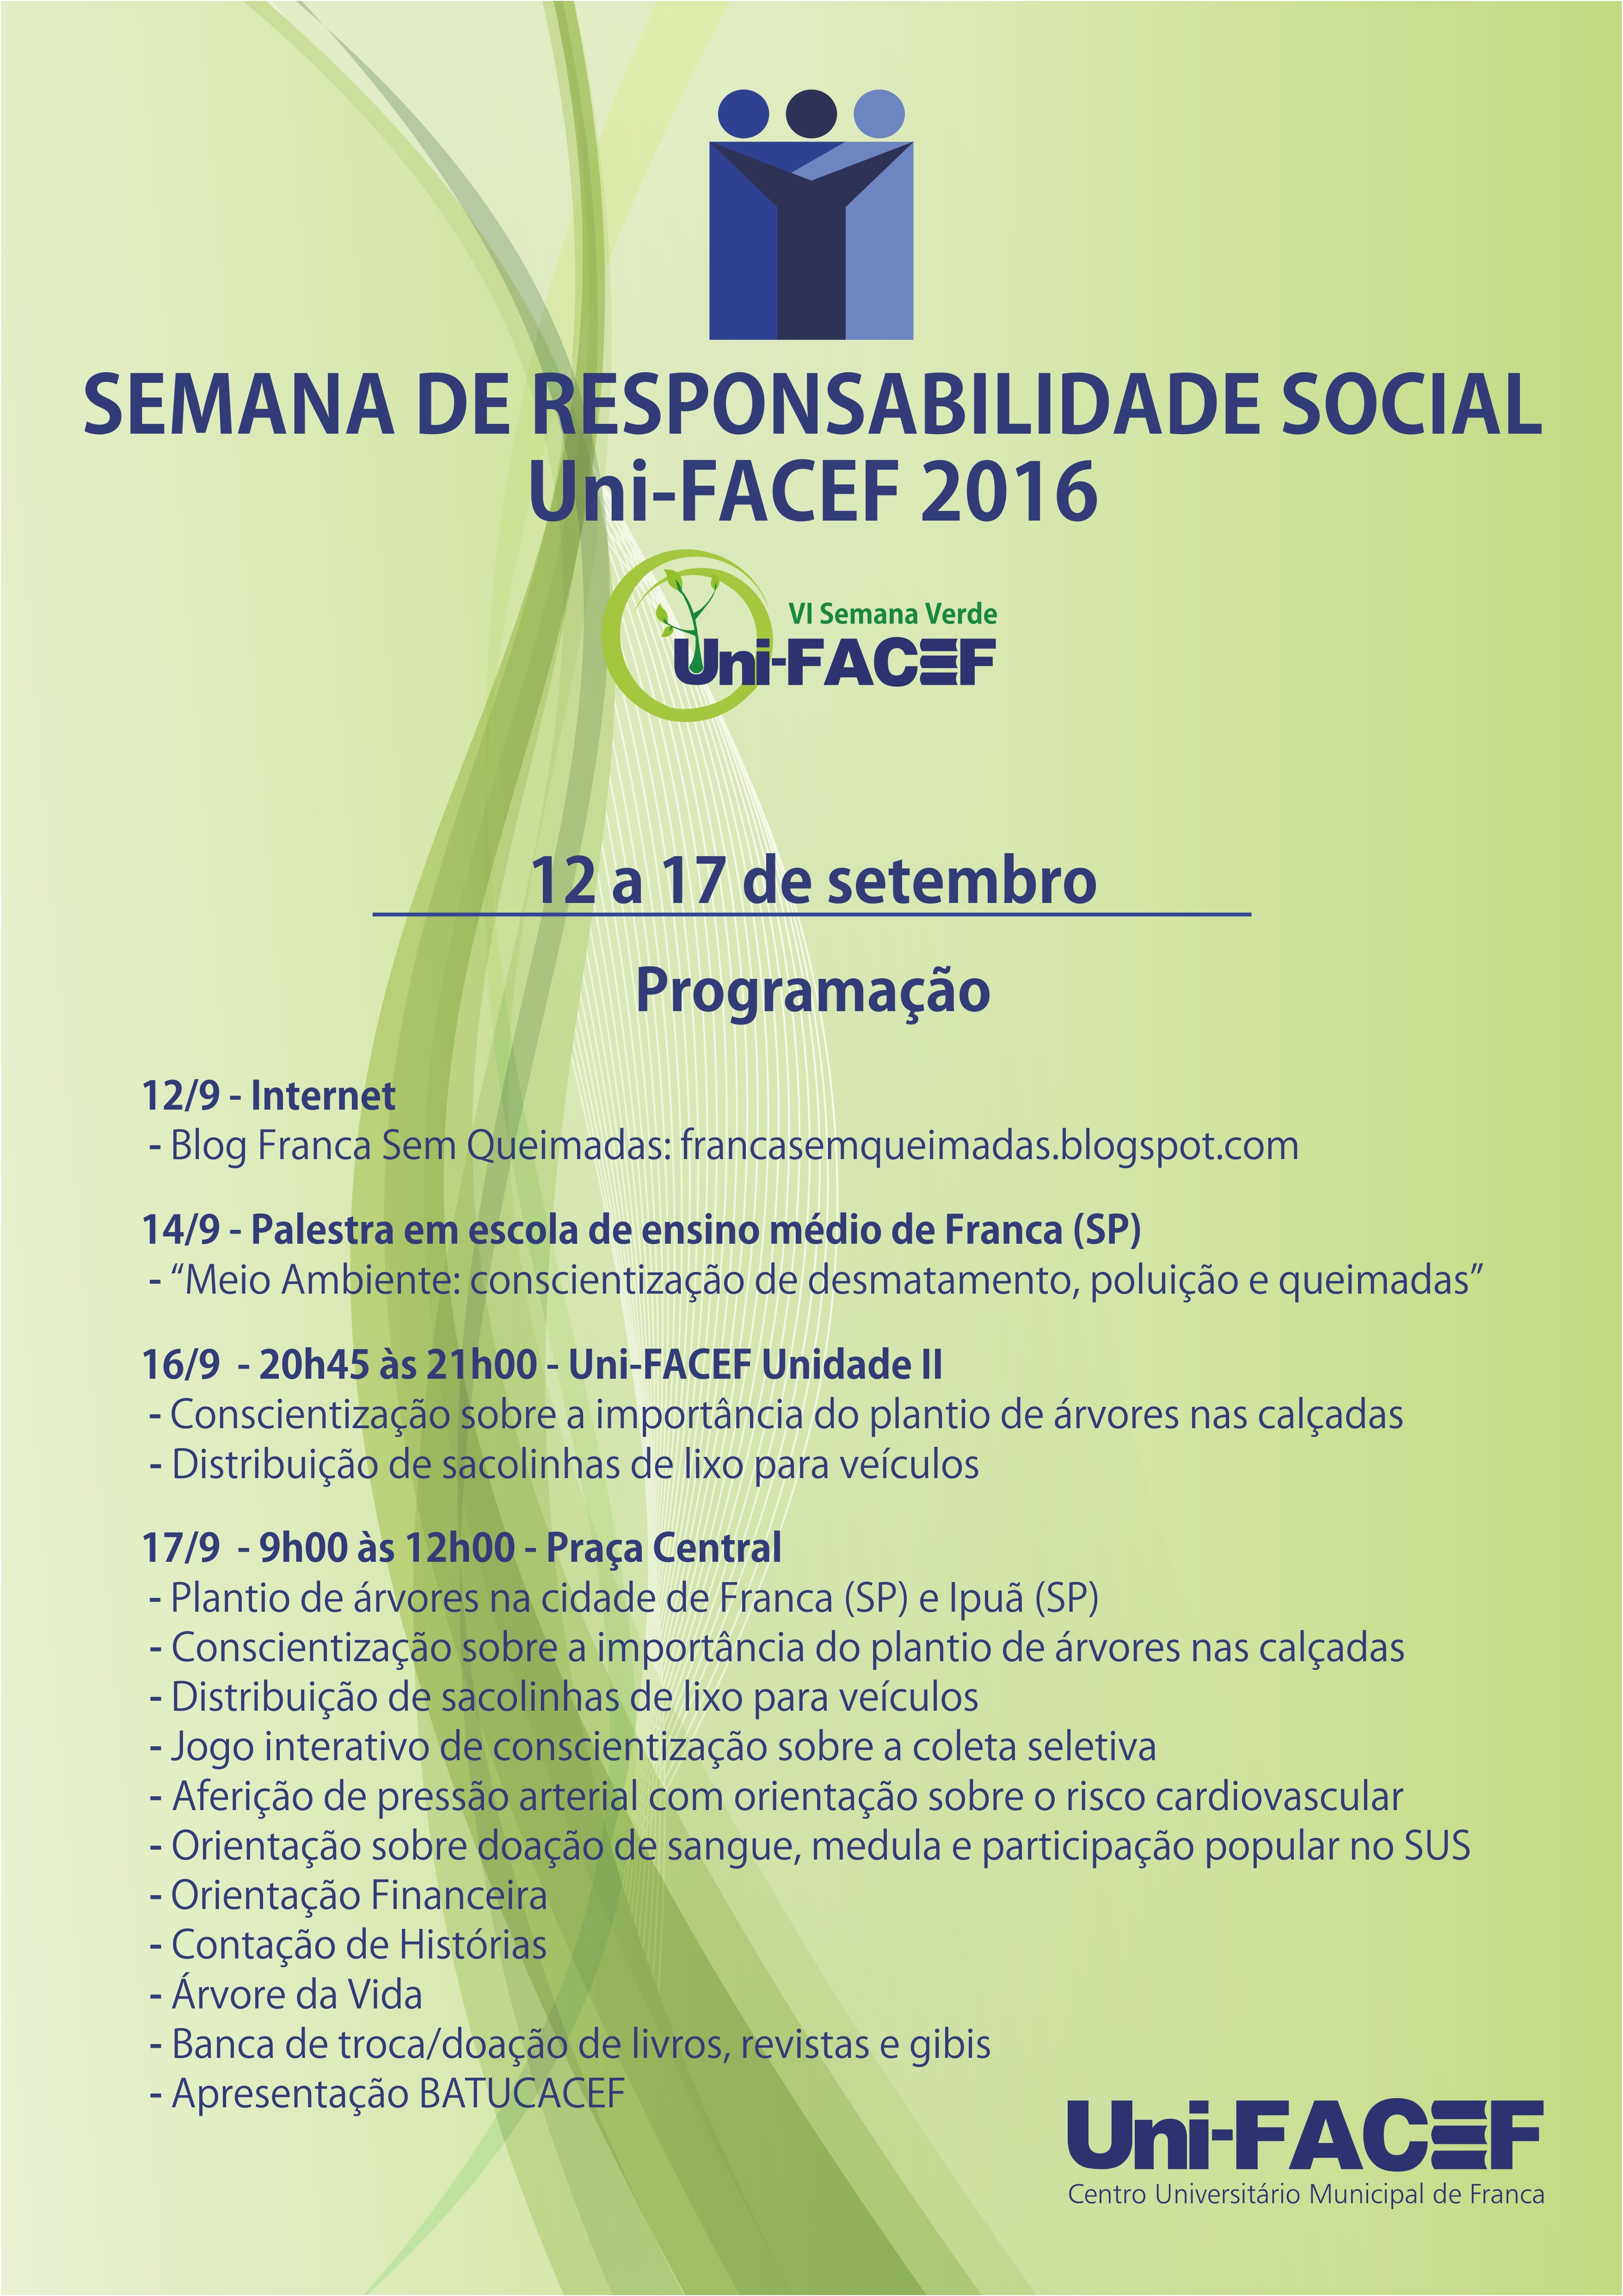 Começa a SEMANA DE RESPONSABILIDADE SOCIAL Uni-FACEF 2016